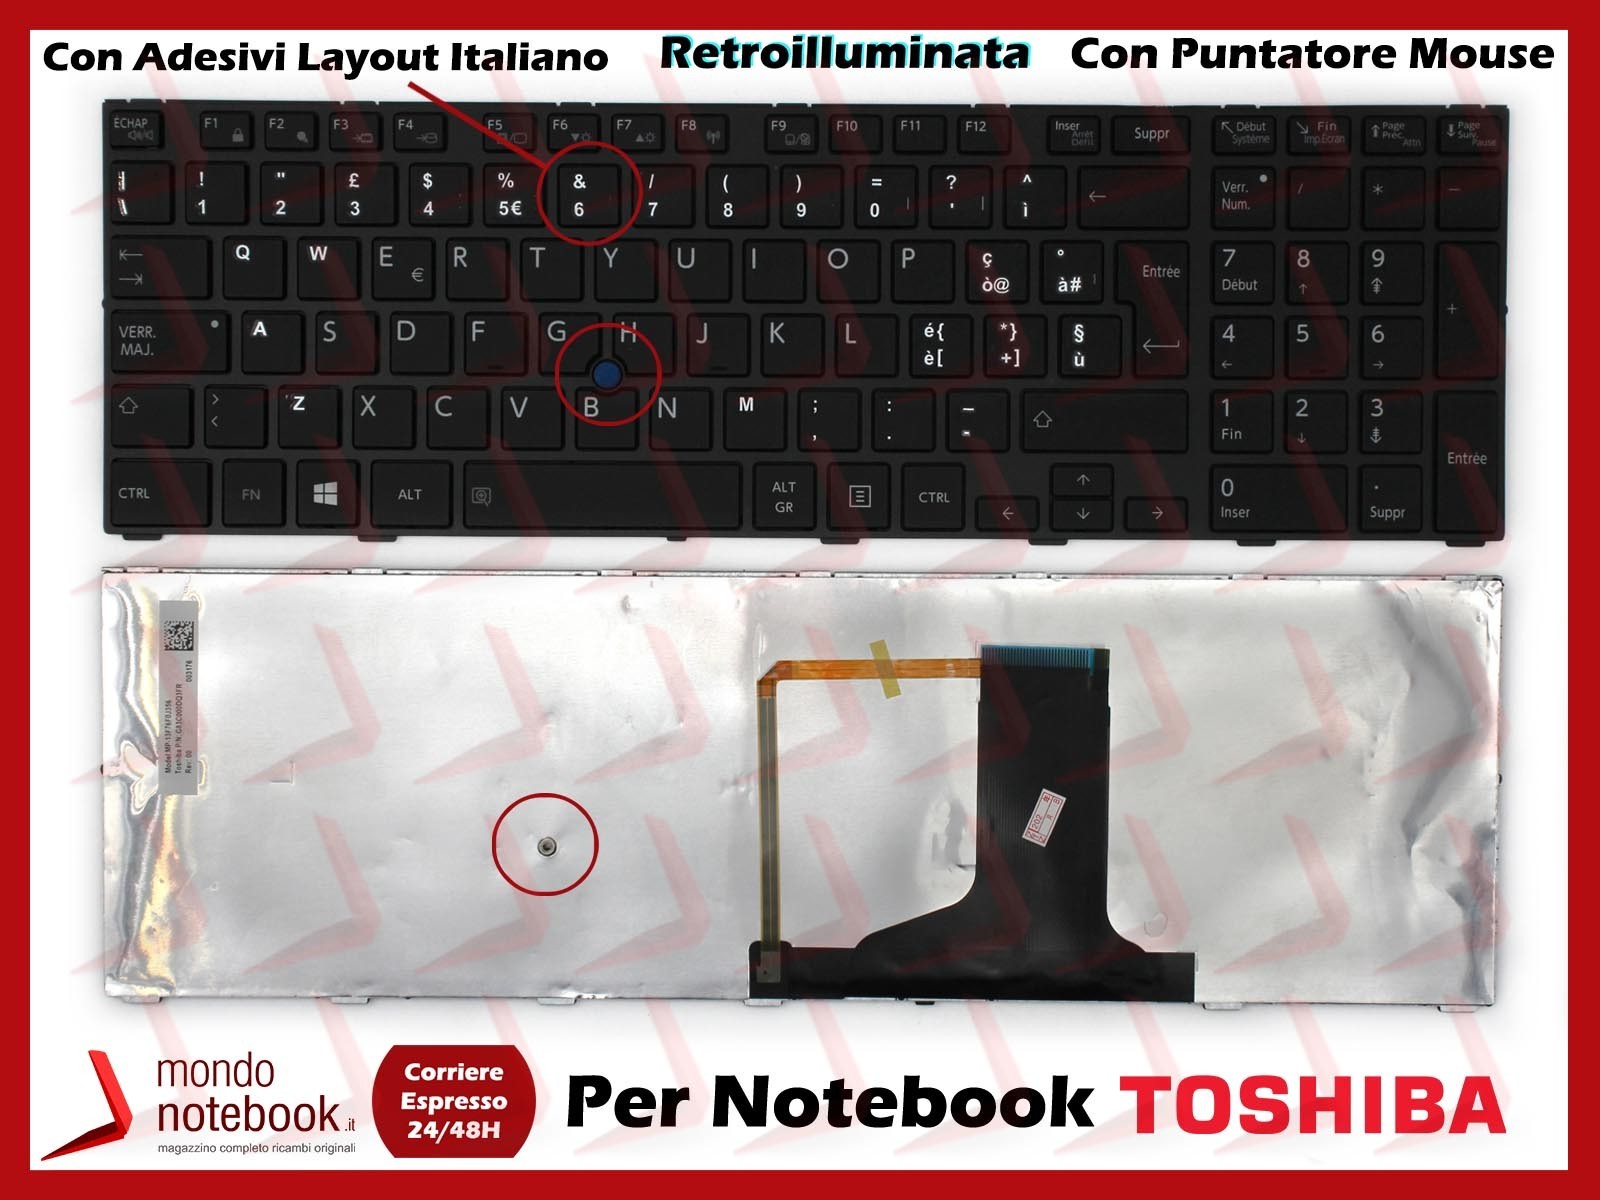 Tastiera Notebook TOSHIBA Tecra A50 W50 W50-A A50-A Retroill. Con ADESIVI LAYOUT ITALIANO